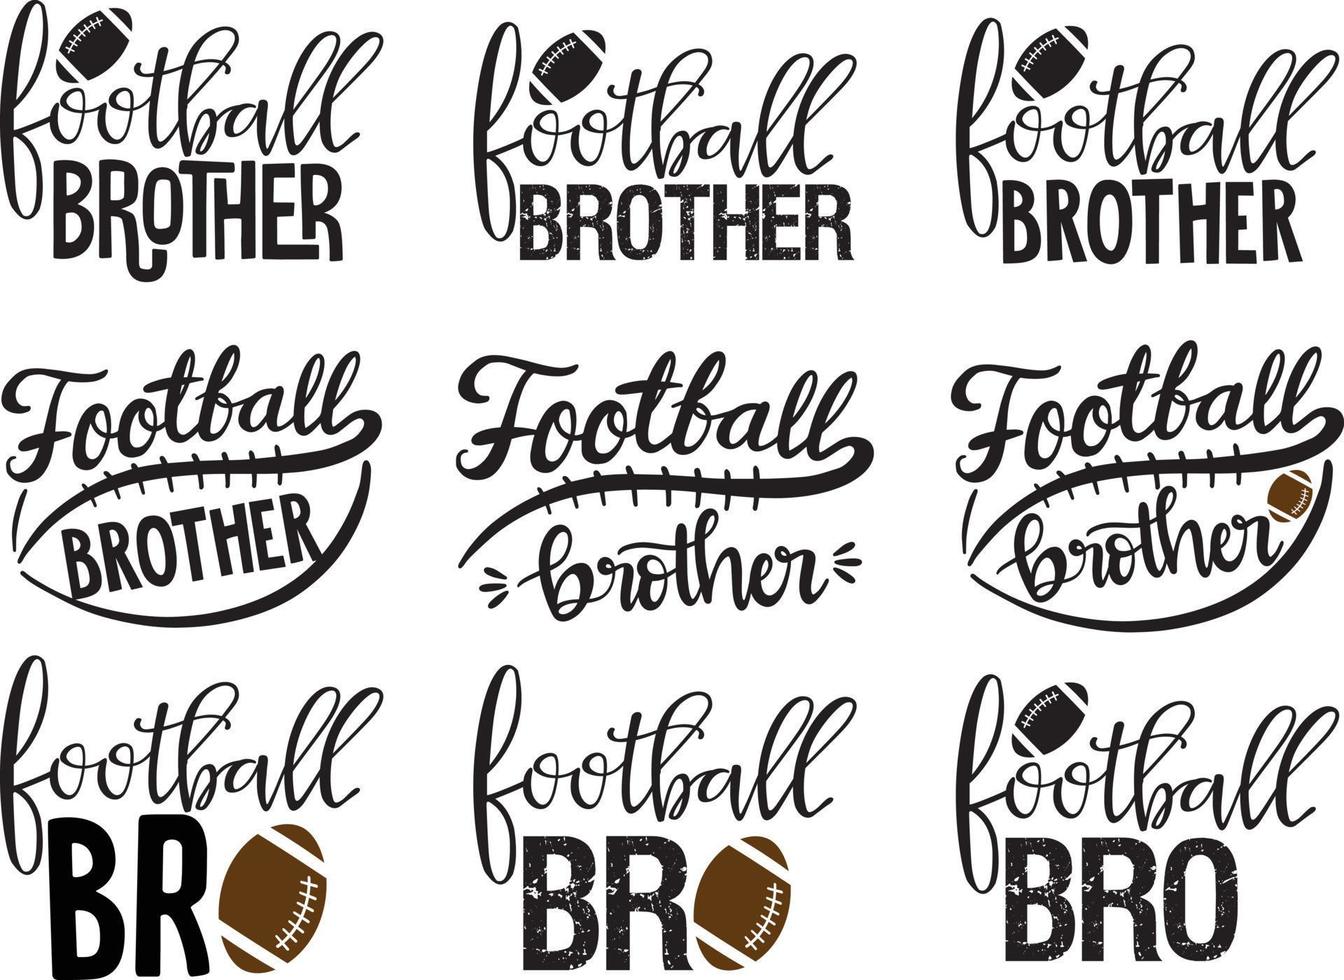 fotboll bror vektor, fotboll vektor, familj fotboll vektor